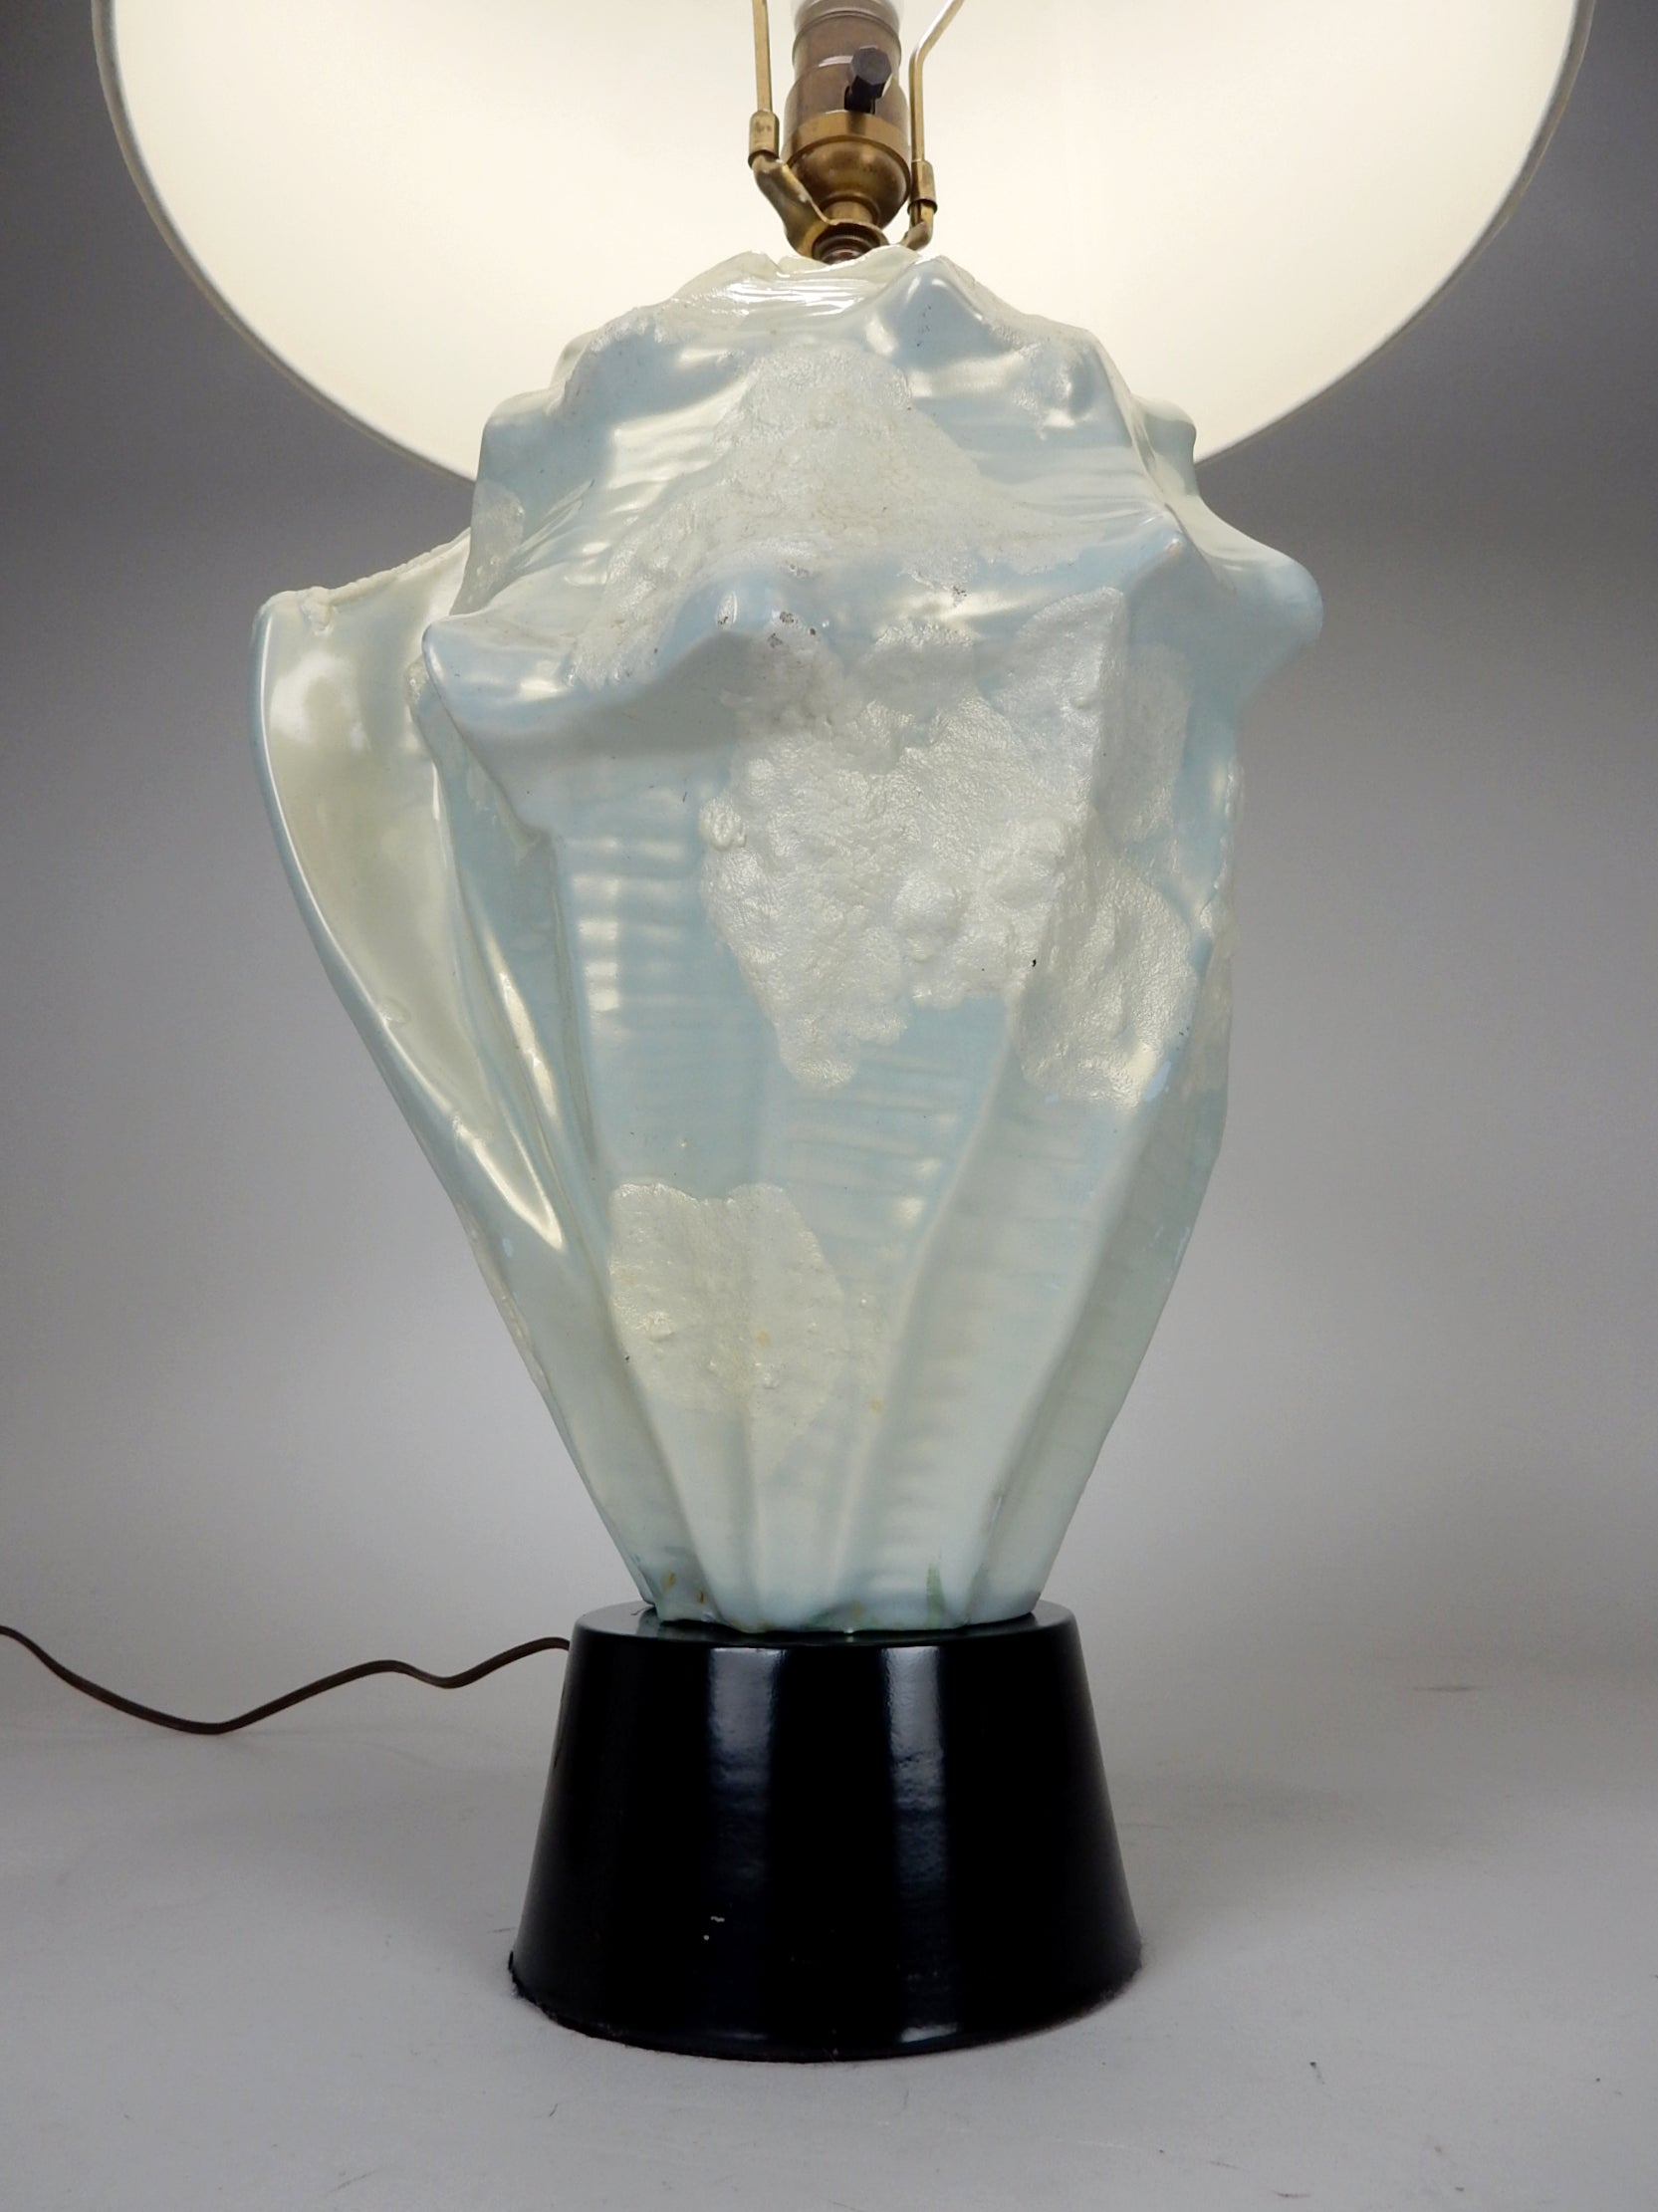 Tischlampe aus Keramik mit Muschelschale. Das ist wirklich ein herausragendes Stück, wunderschön. 
Die lumineszierende Glasur lässt sie im Licht brillant leuchten.
Nach der Verdrahtung und der Hardware zu urteilen, sieht es aus wie eine